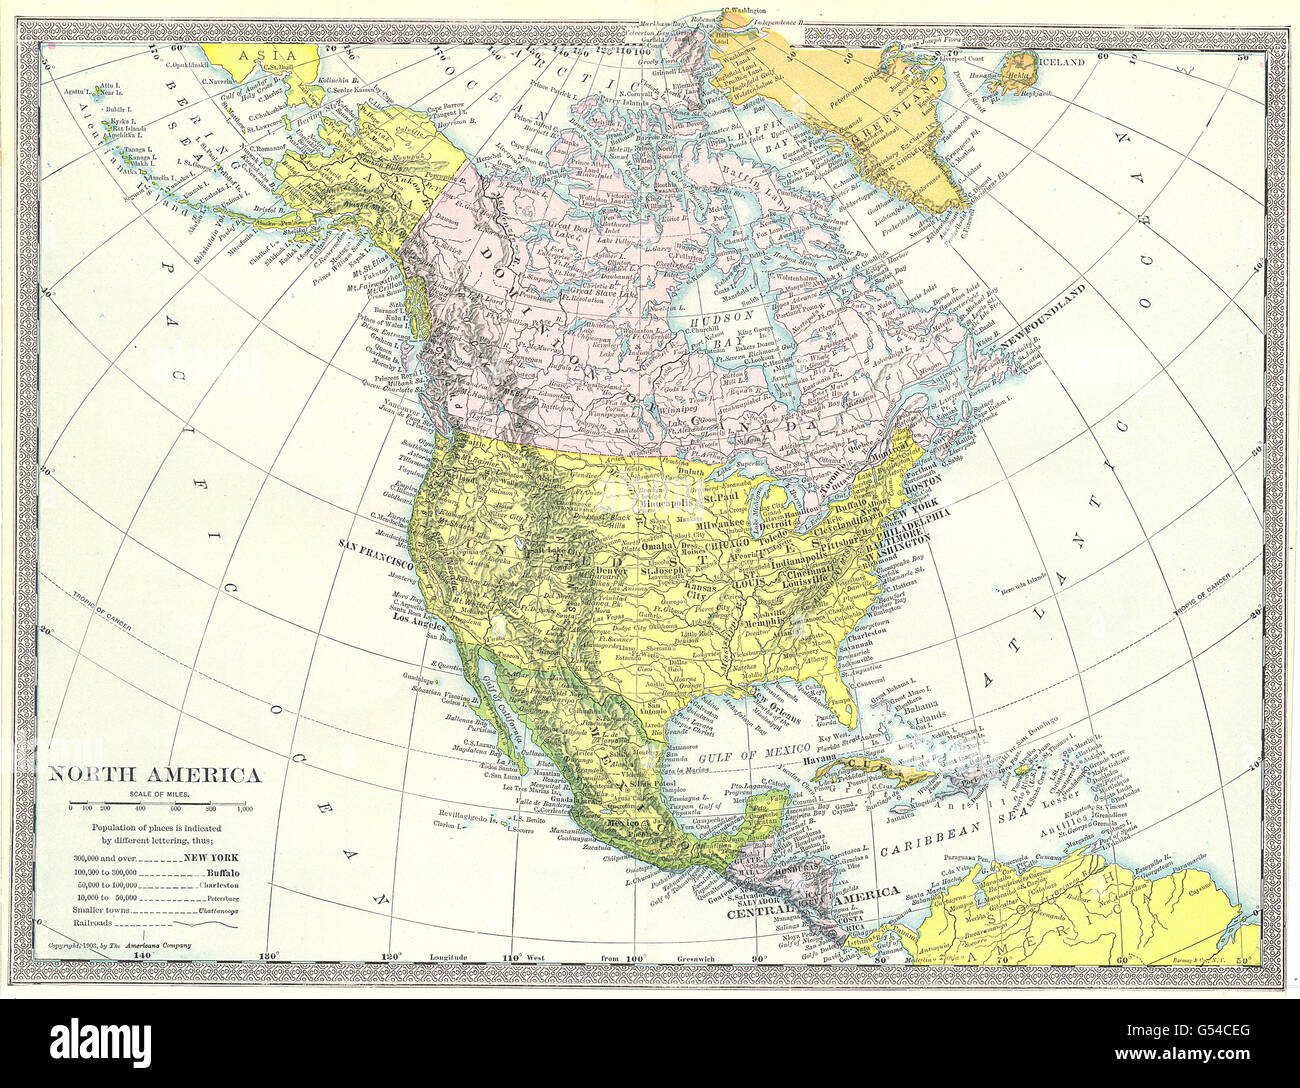 Mappa Politica Degli Stati Uniti Immagini e Fotos Stock - Alamy